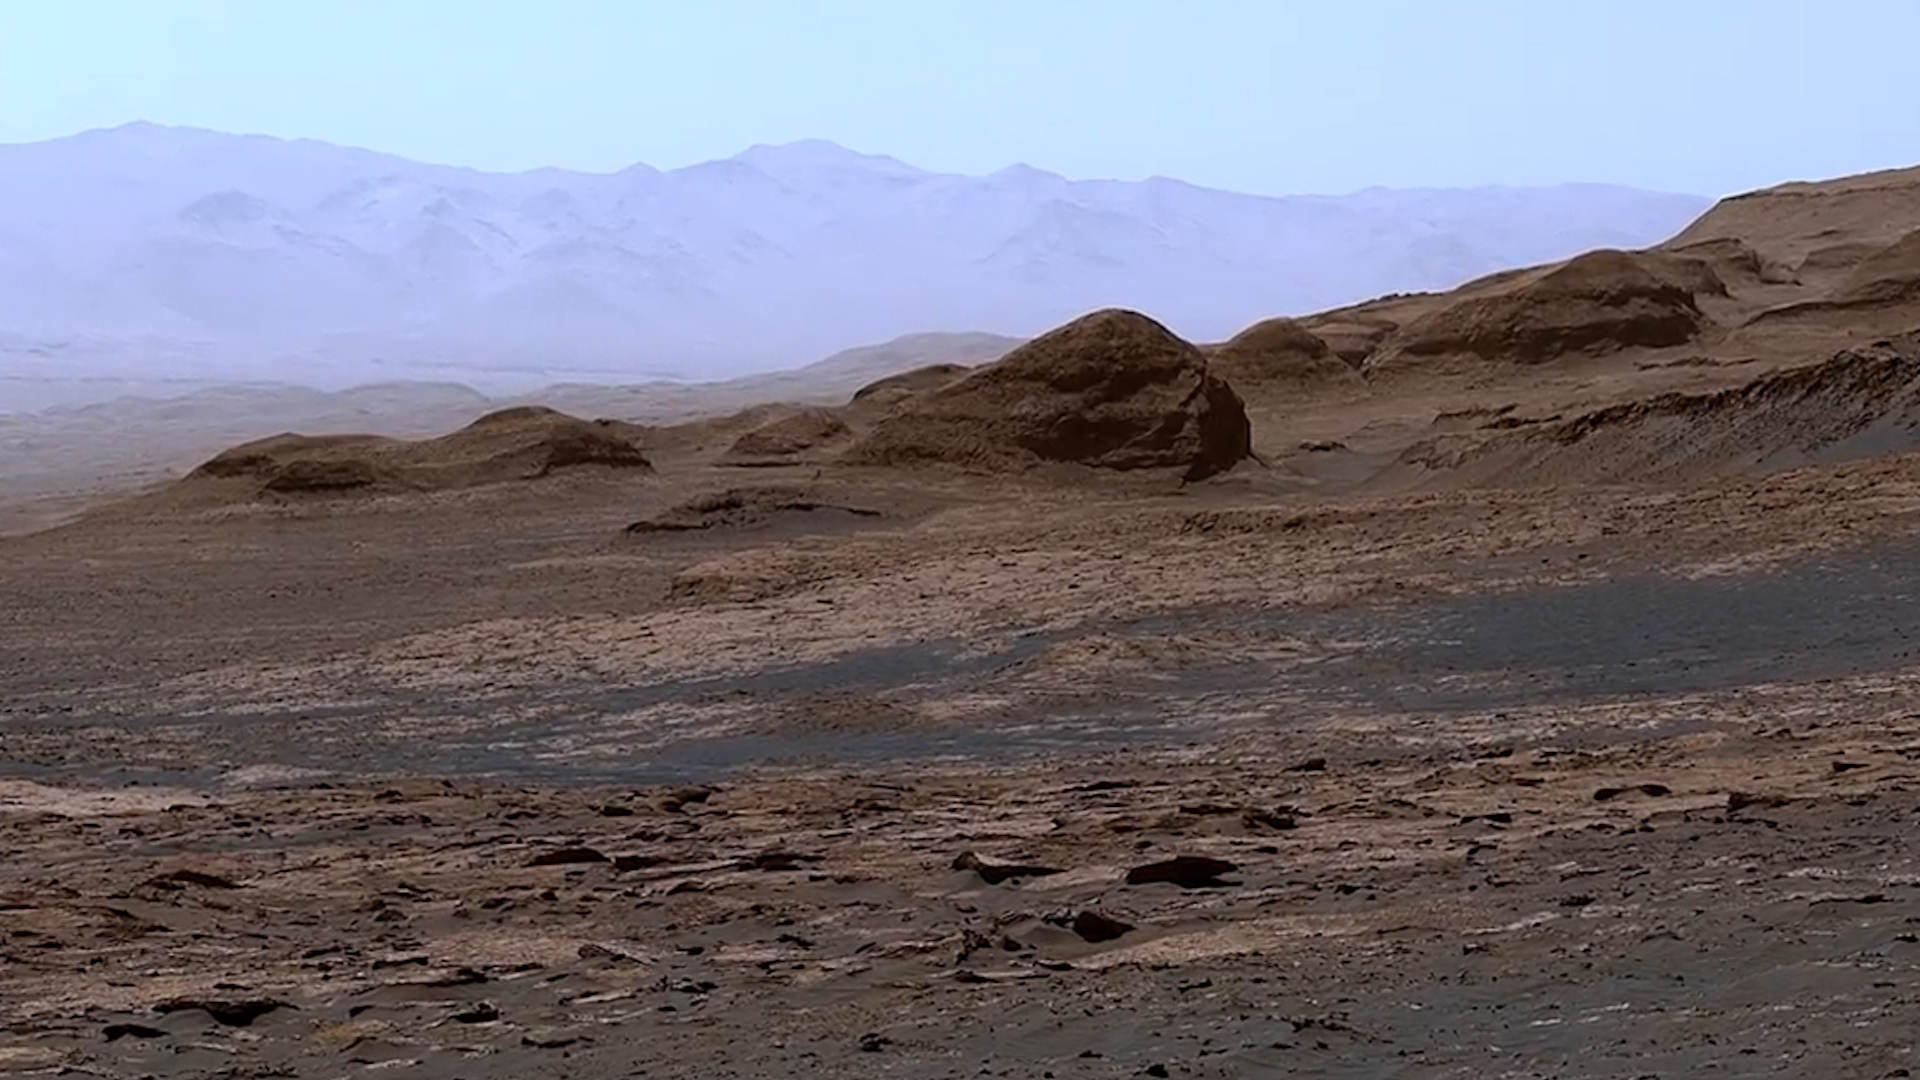 La NASA compartió imágenes de Marte con vista panorámica tomadas por el Curiosity desde una montaña